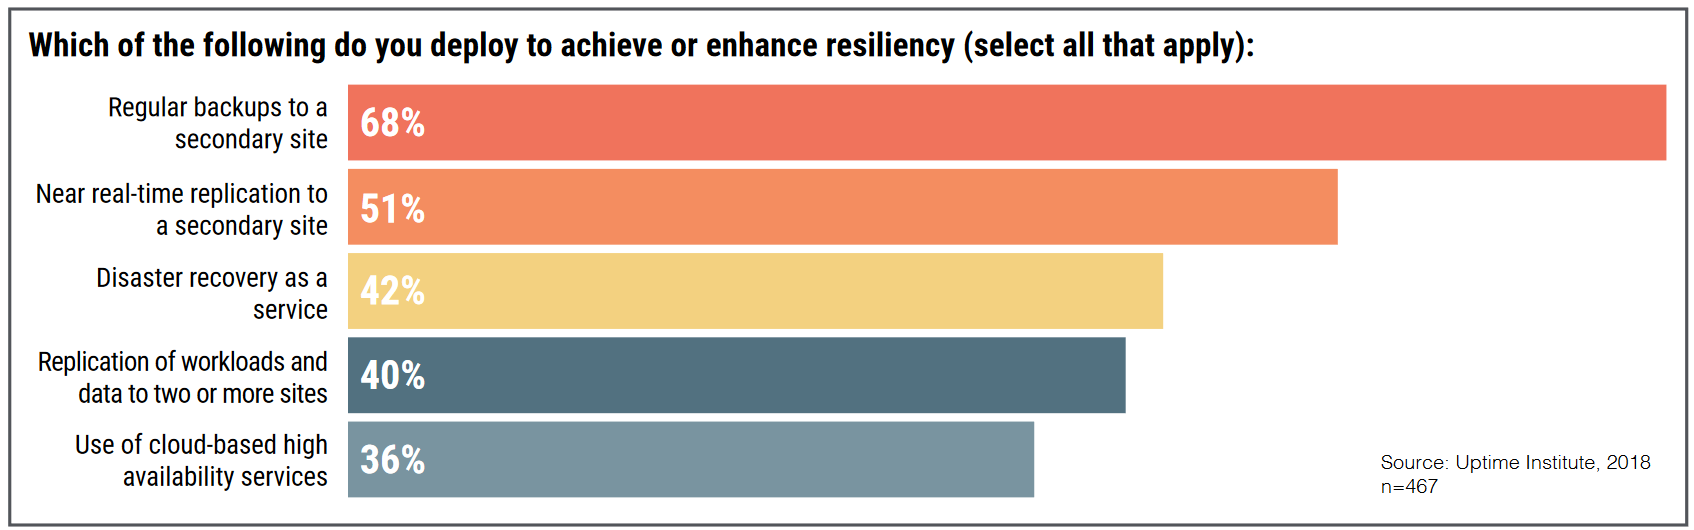 Uptime Institute survey - maatregelen voor resiliency